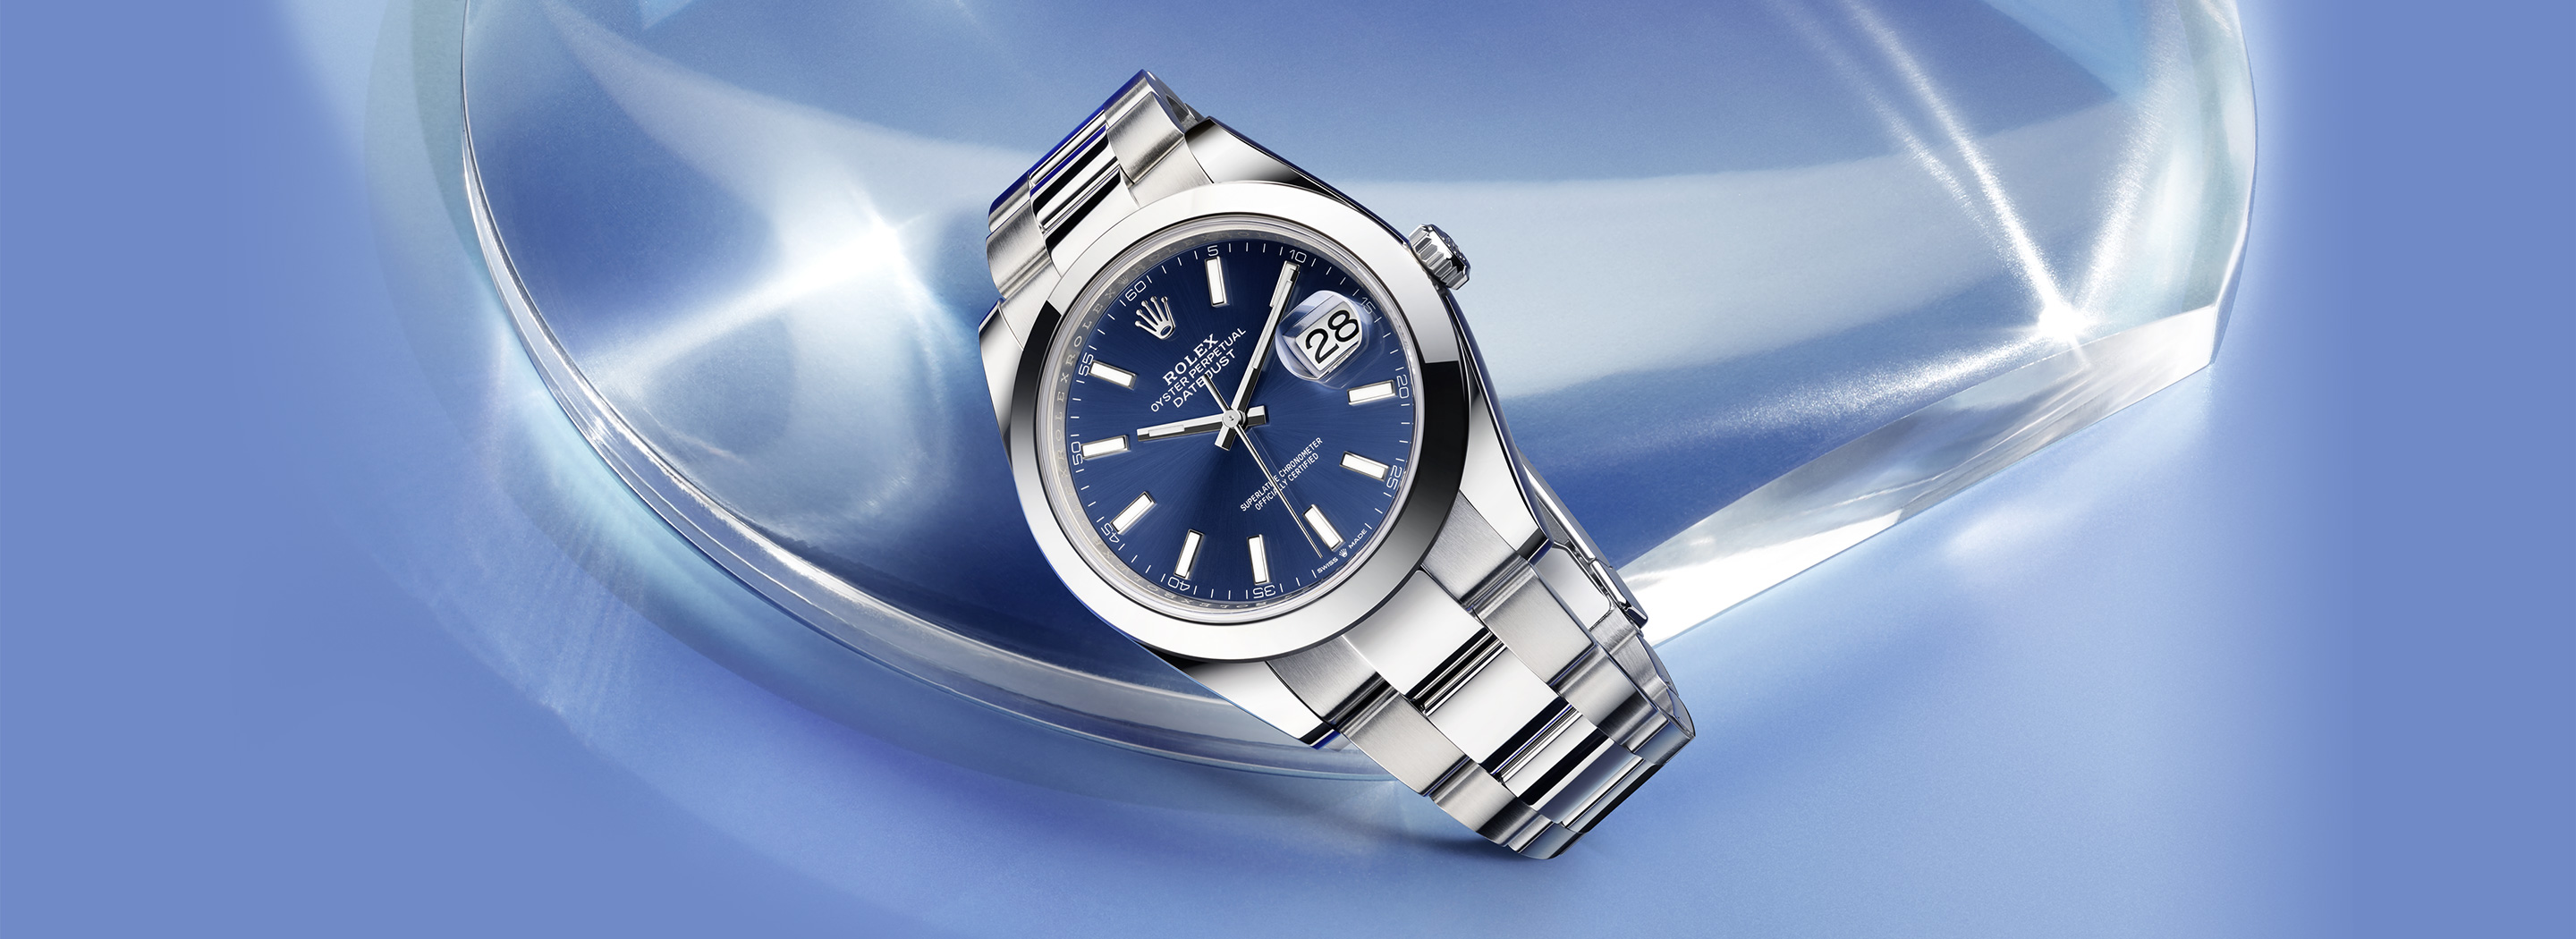 Rolex Datejust watches 